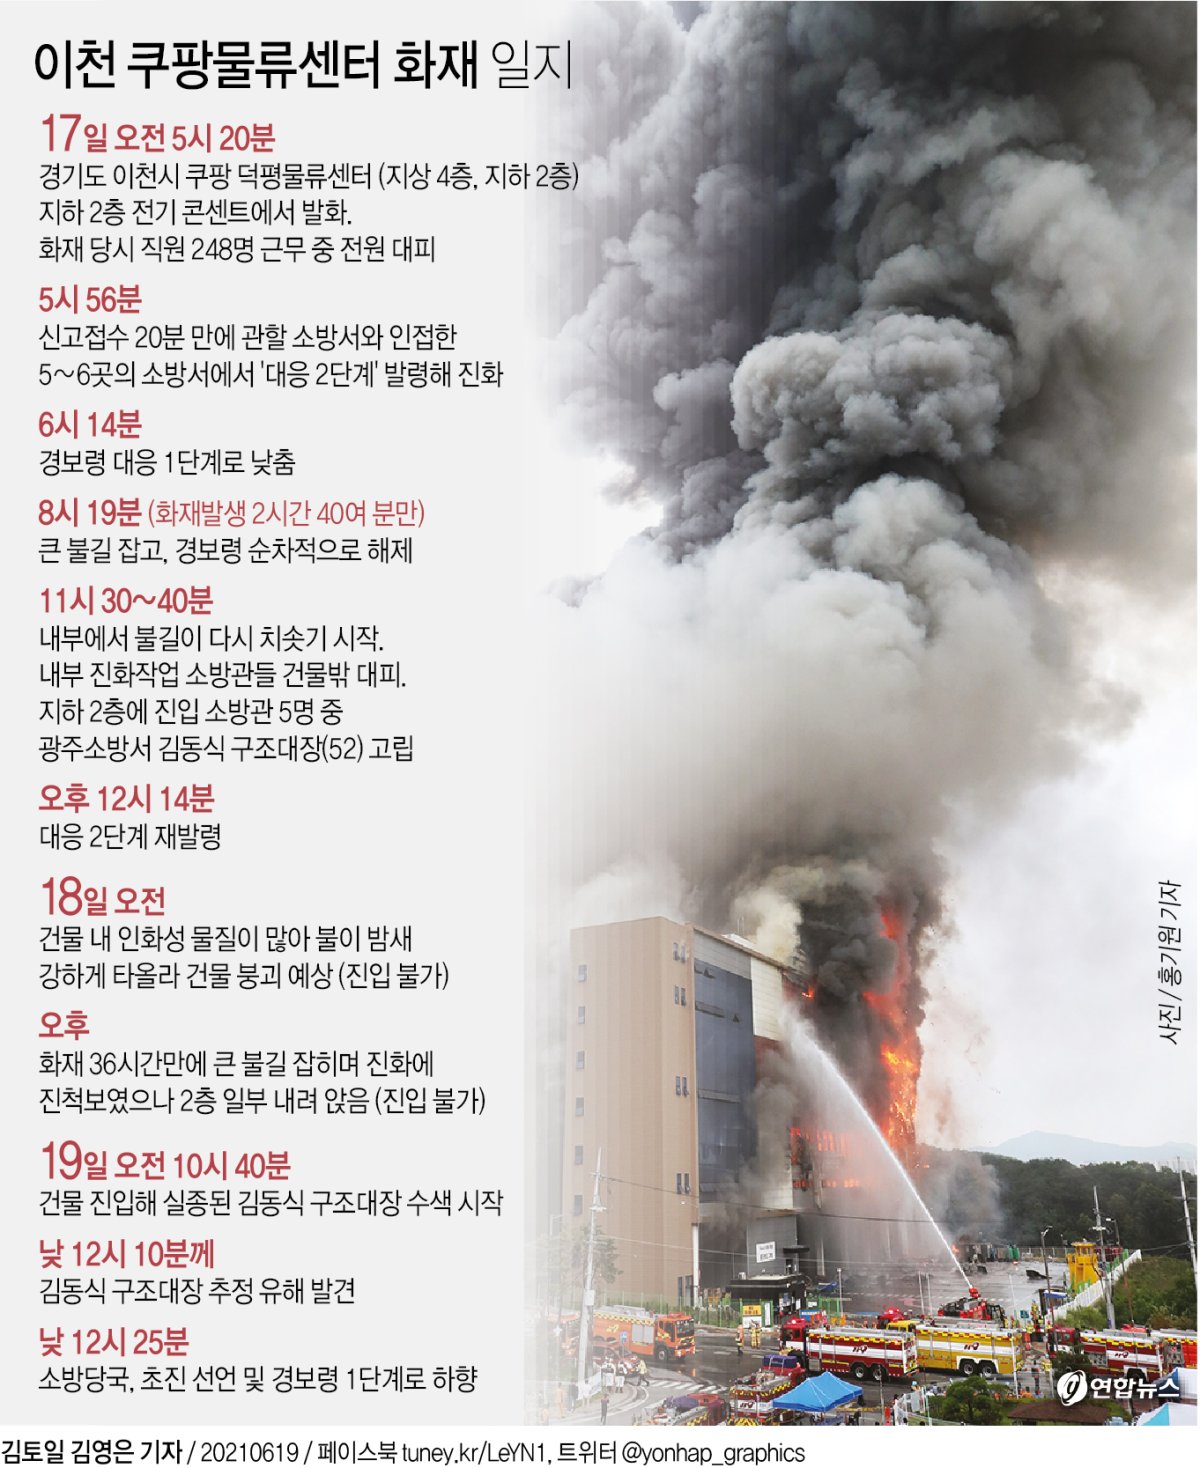 [그래픽] 이천 쿠팡물류센터 화재 일지